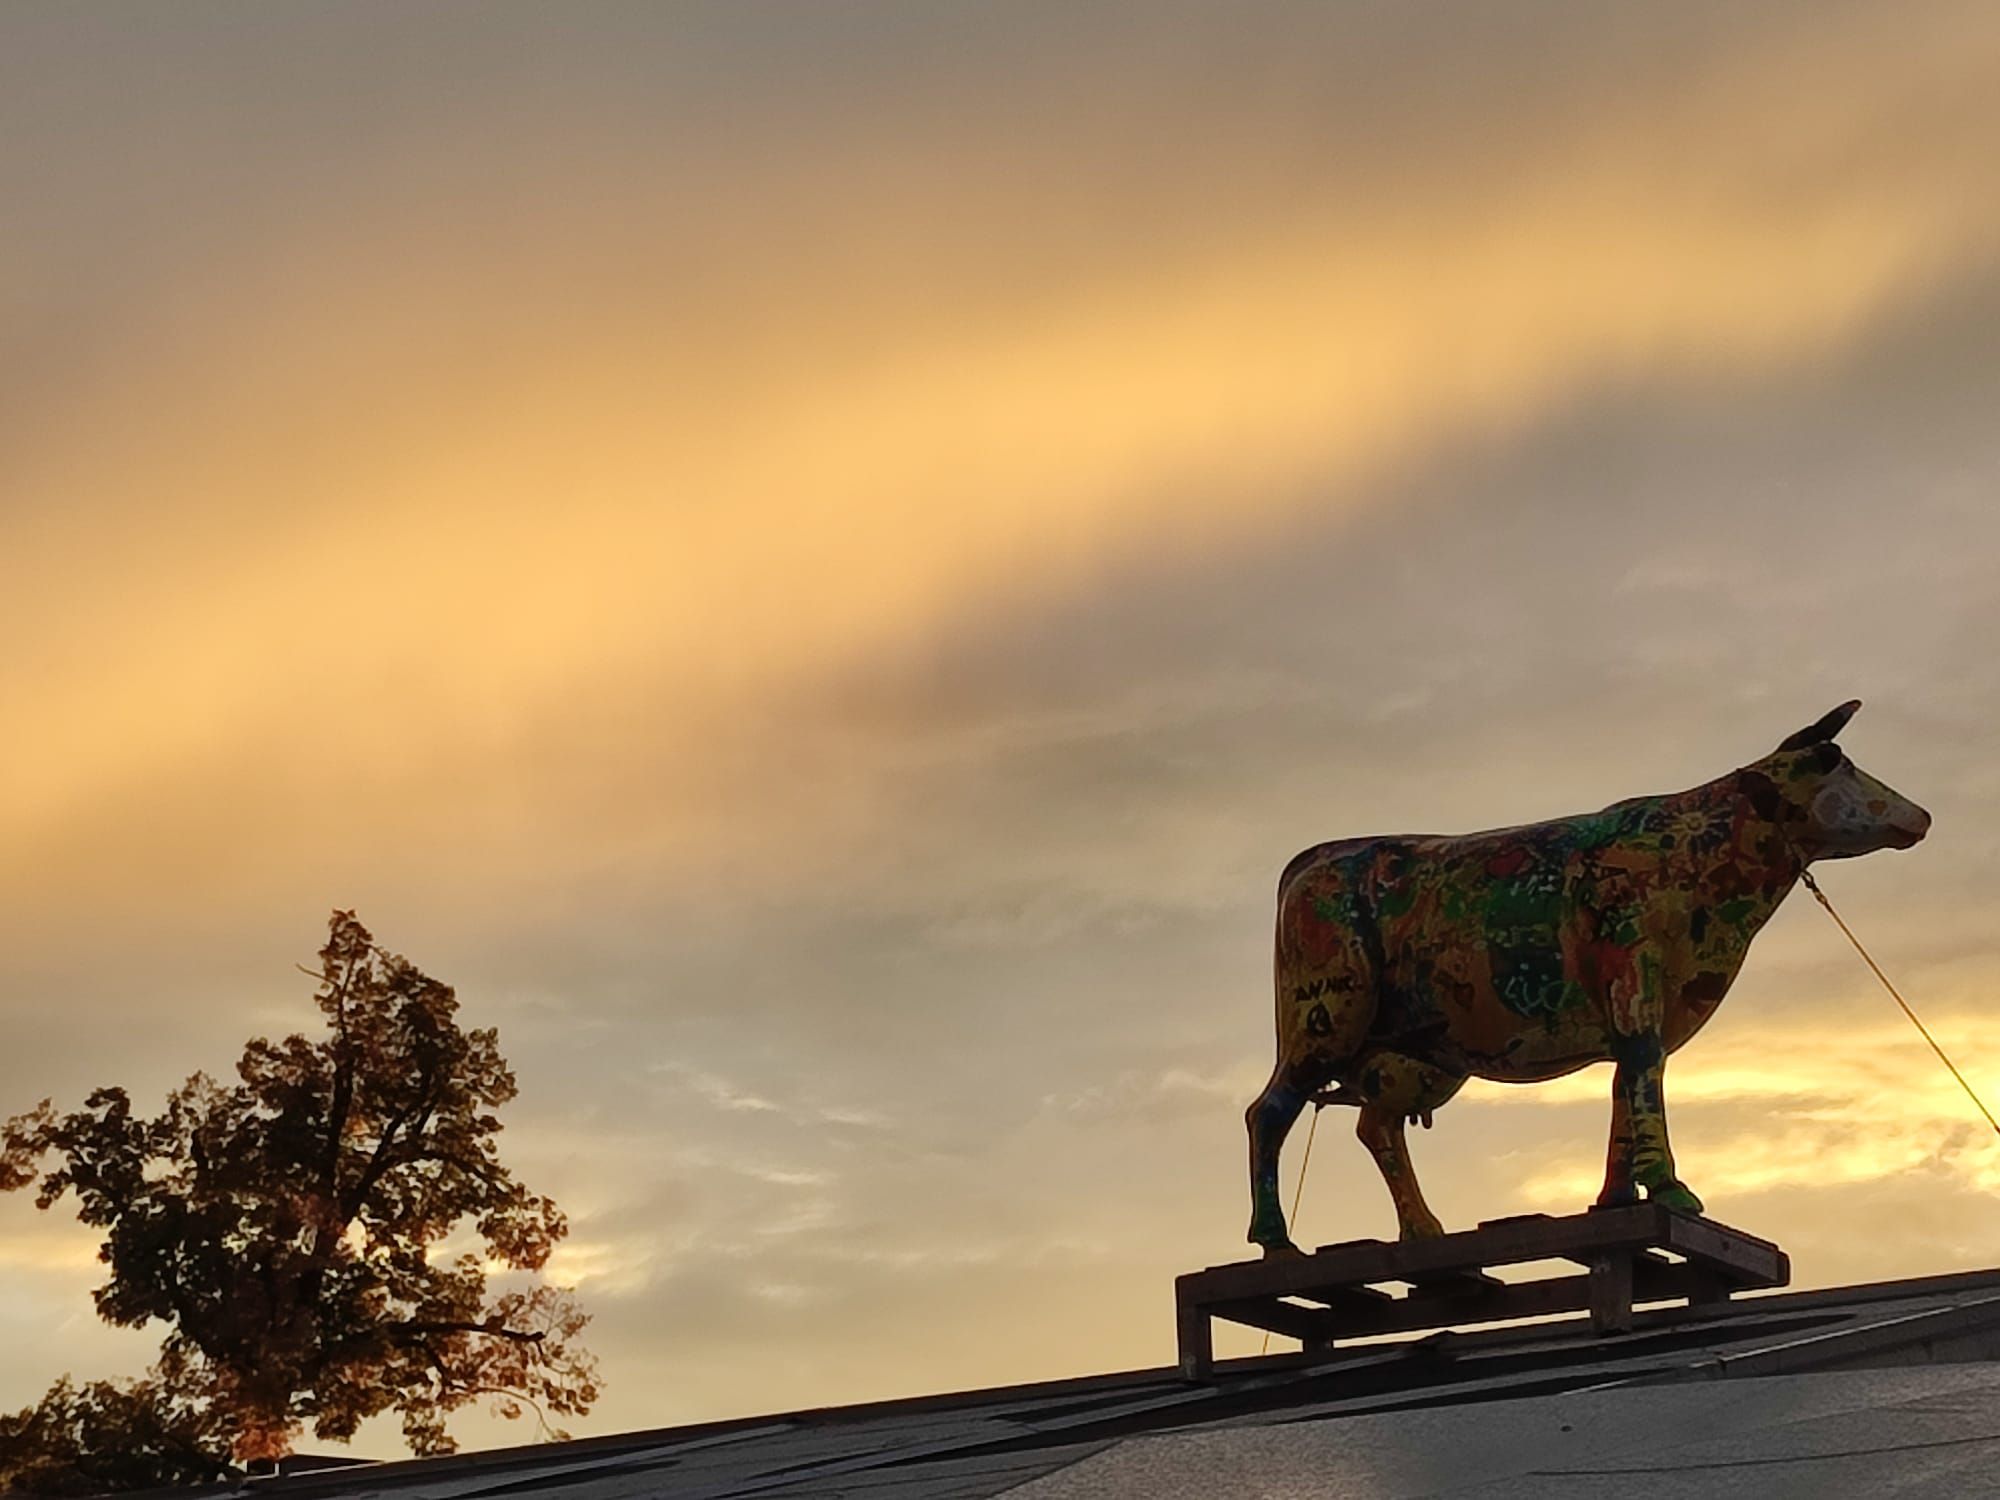 Sonnenuntergang ueber dem Proseccostadel auf dem Herbstfest Rosenheim mit bunter Kuhfigur auf rechter Seite